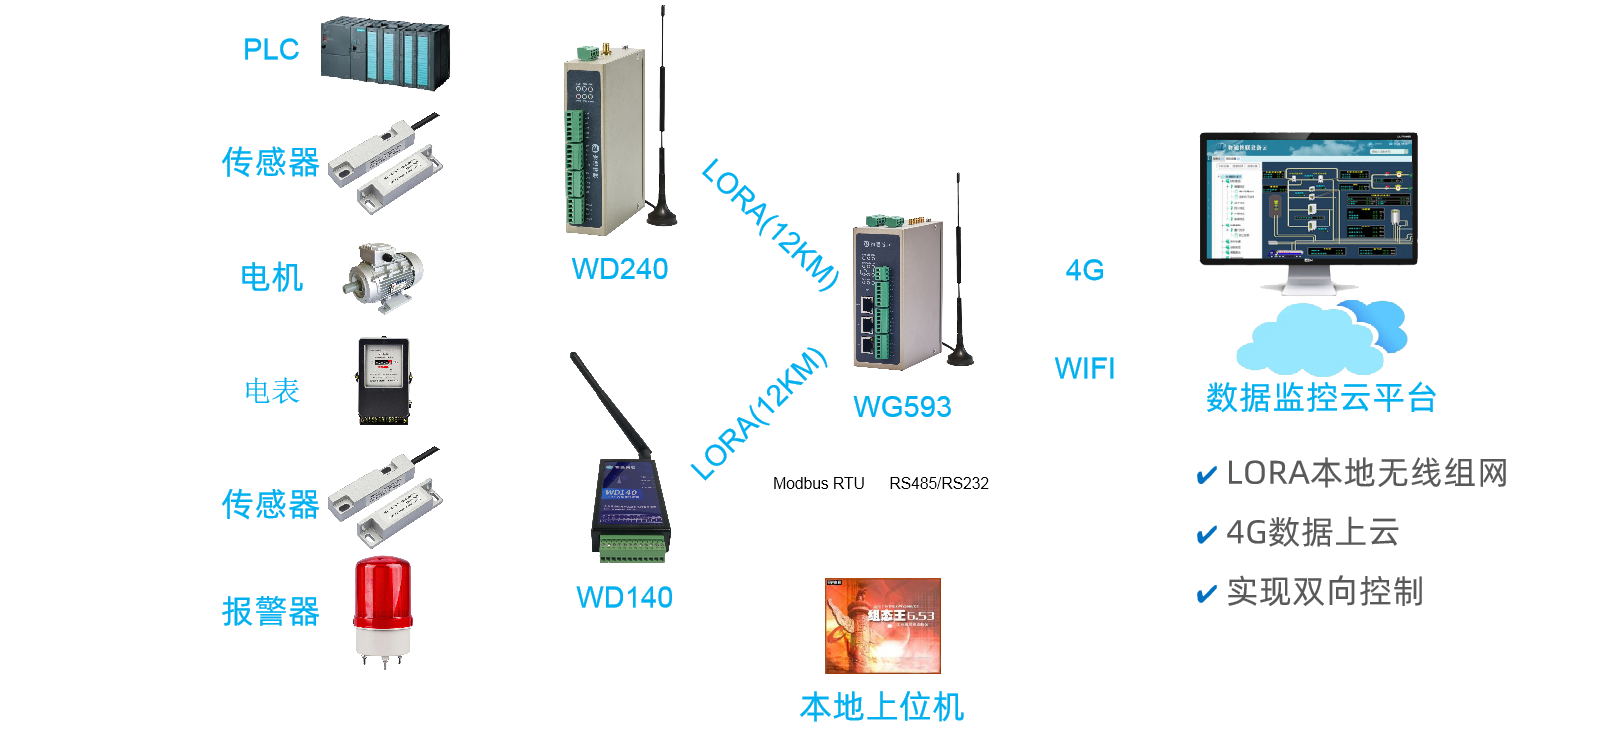 本地设备通过WD140/WD240 LORA组网后数据上传云平台